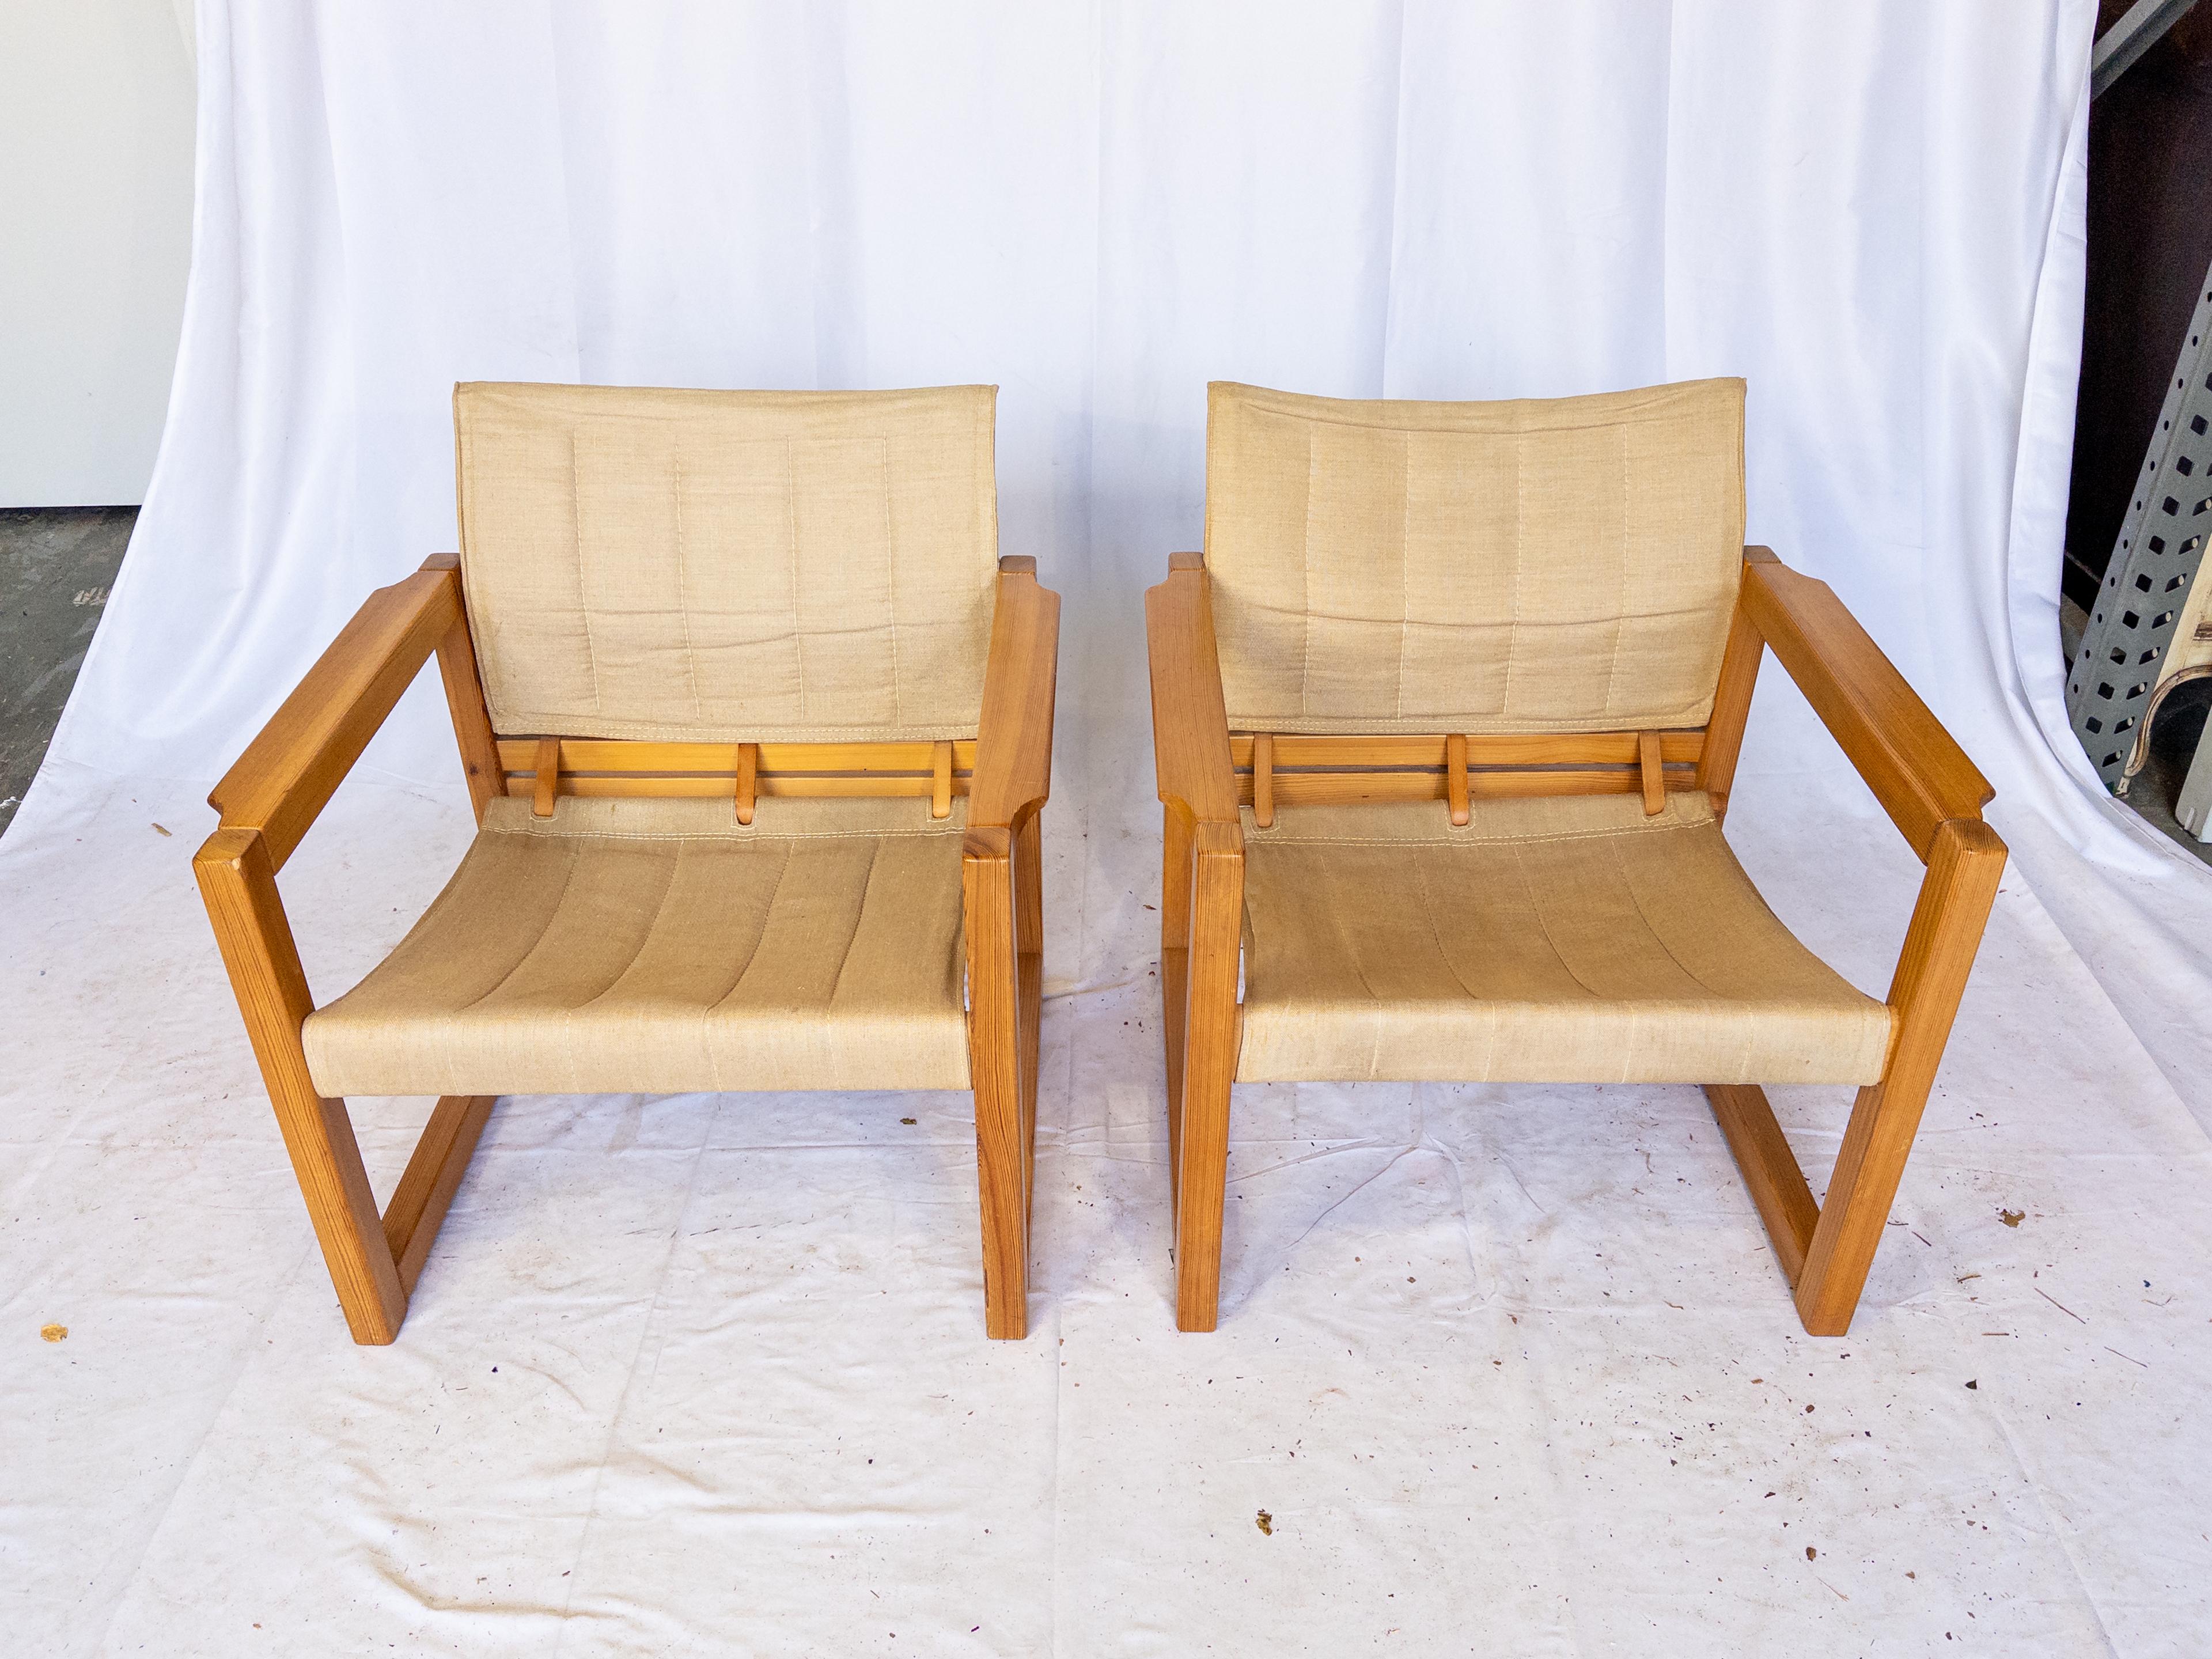 Les fauteuils Safari suédois des années 1970 de Karin Mobring dégagent un charme intemporel et une élégance robuste. Fabriqués avec des cadres en bois de pin massif, ces fauteuils bénéficient d'une durabilité et d'une esthétique naturelle. Le